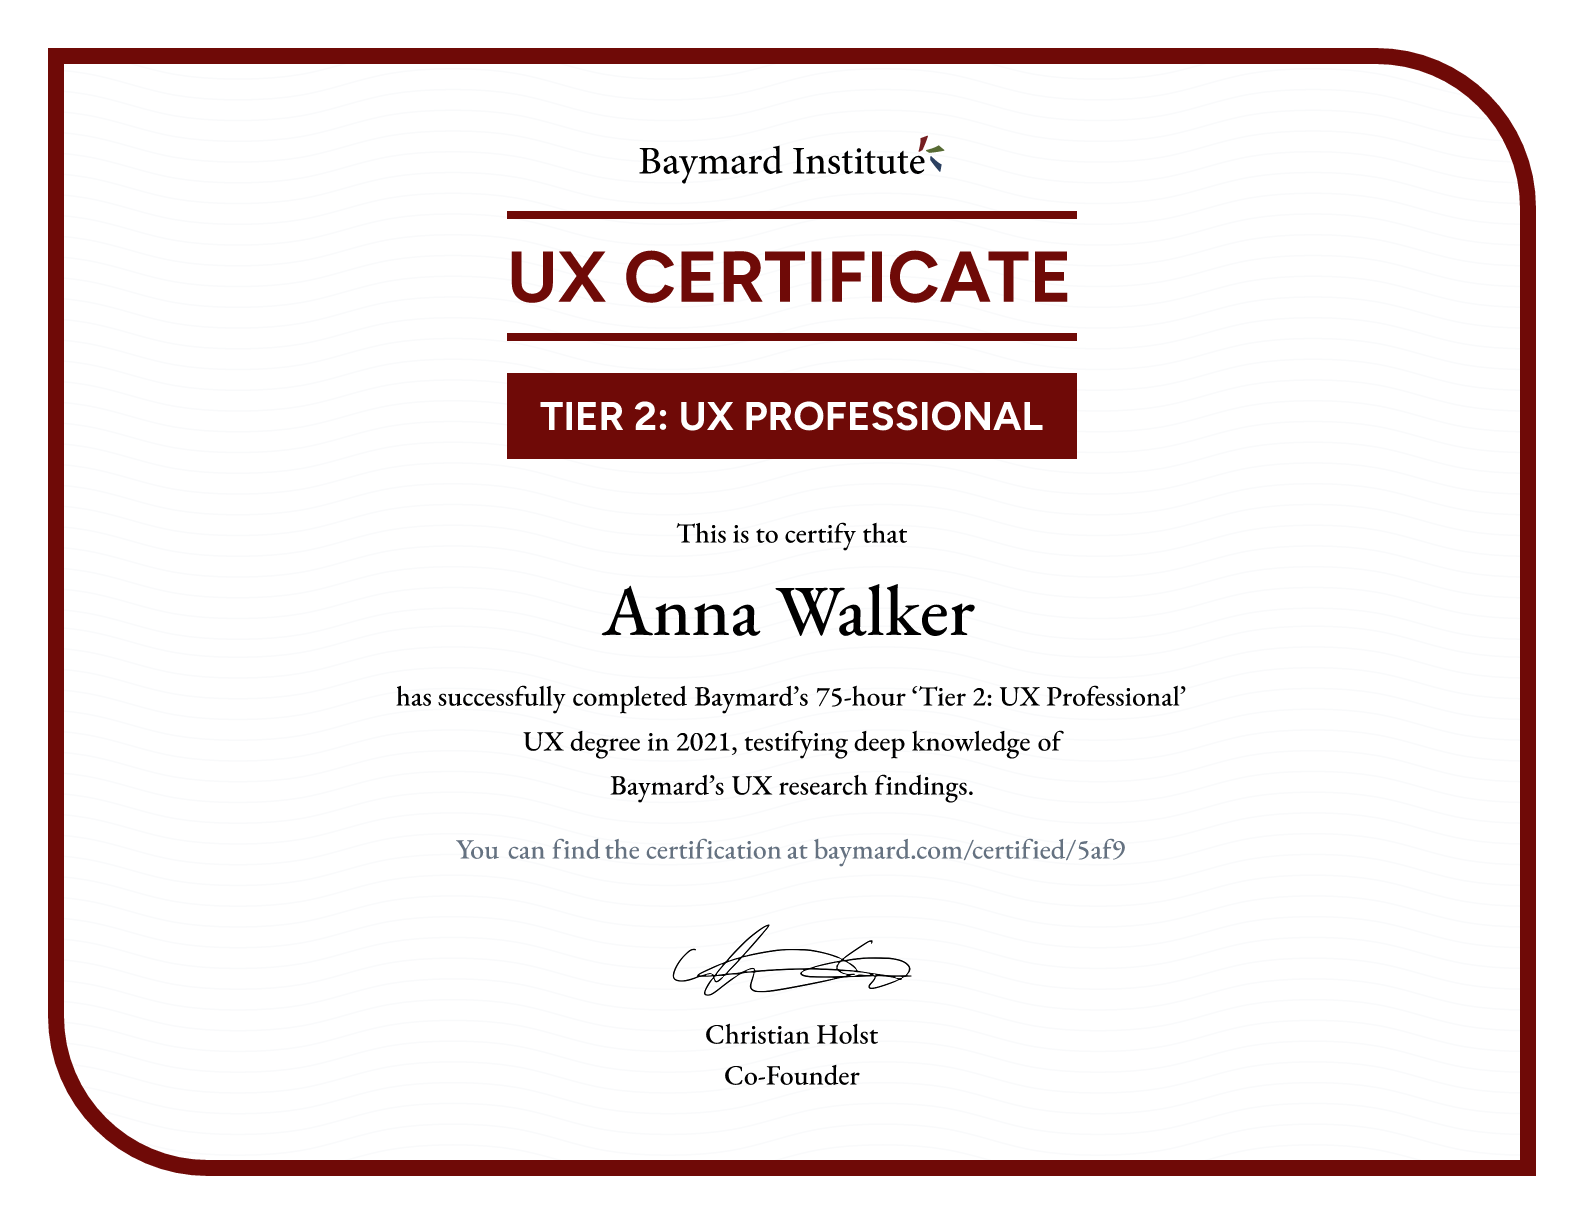 Anna Walker’s certificate